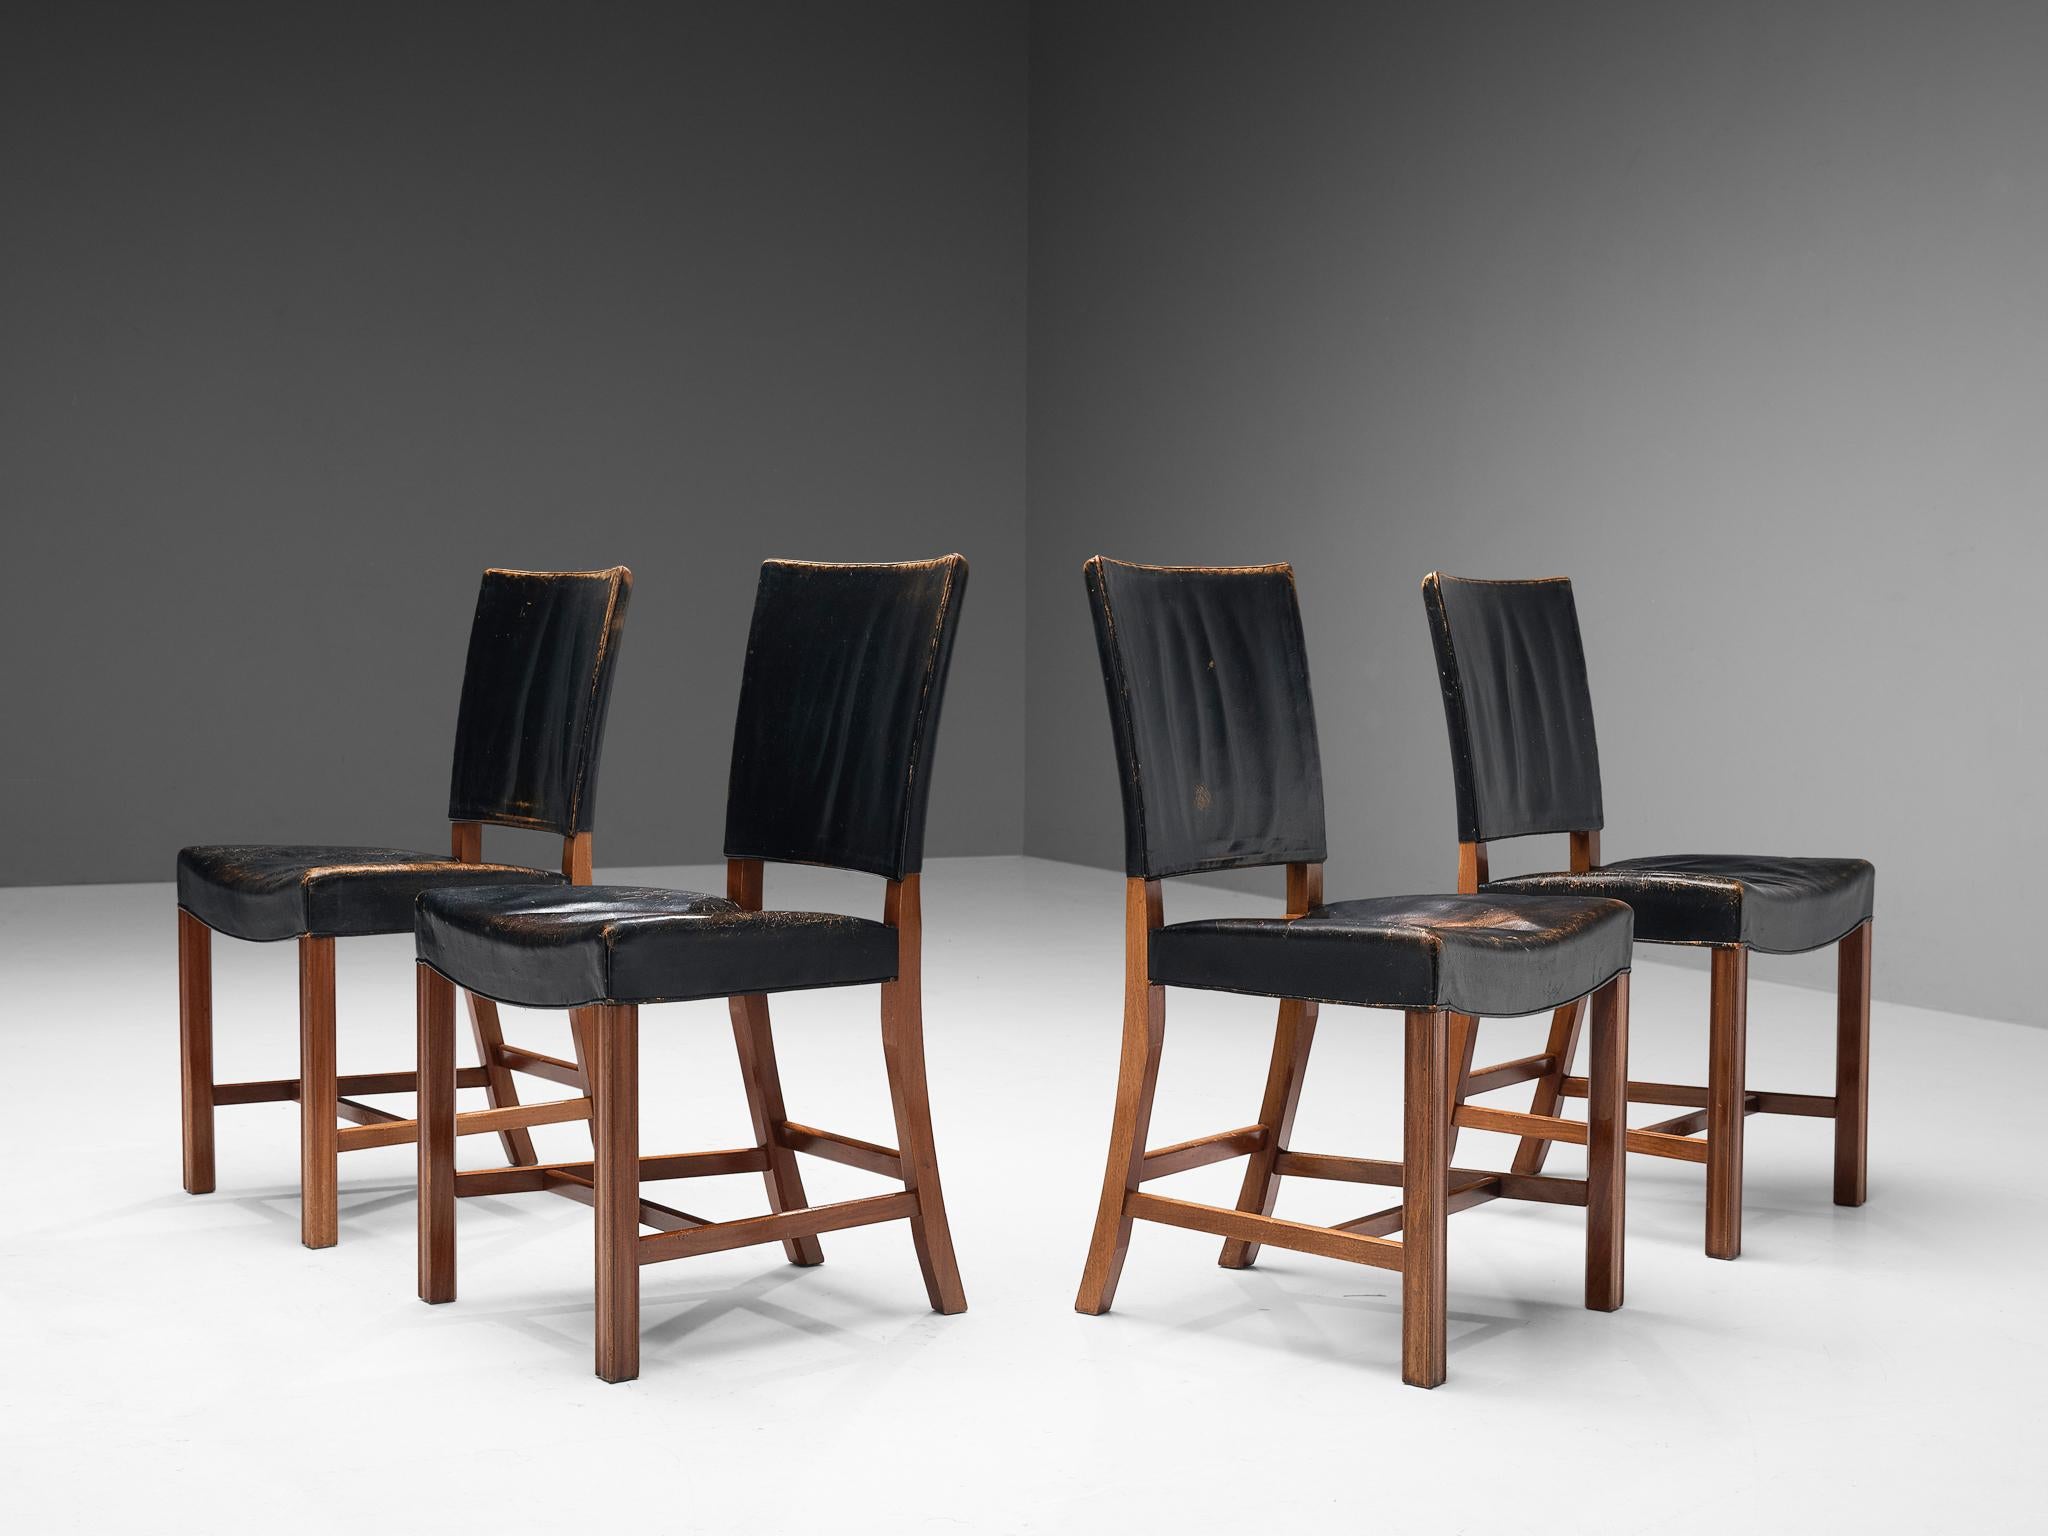 Kaare Klint pour Rud Rasmussen, ensemble de quatre chaises de salle à manger 'The Red Chair', modèle 3949, cuir patiné d'origine, acajou, Danemark, conçu en 1928, fabriqué dans les années 1930.

Ces chaises de salle à manger en cuir noir et acajou